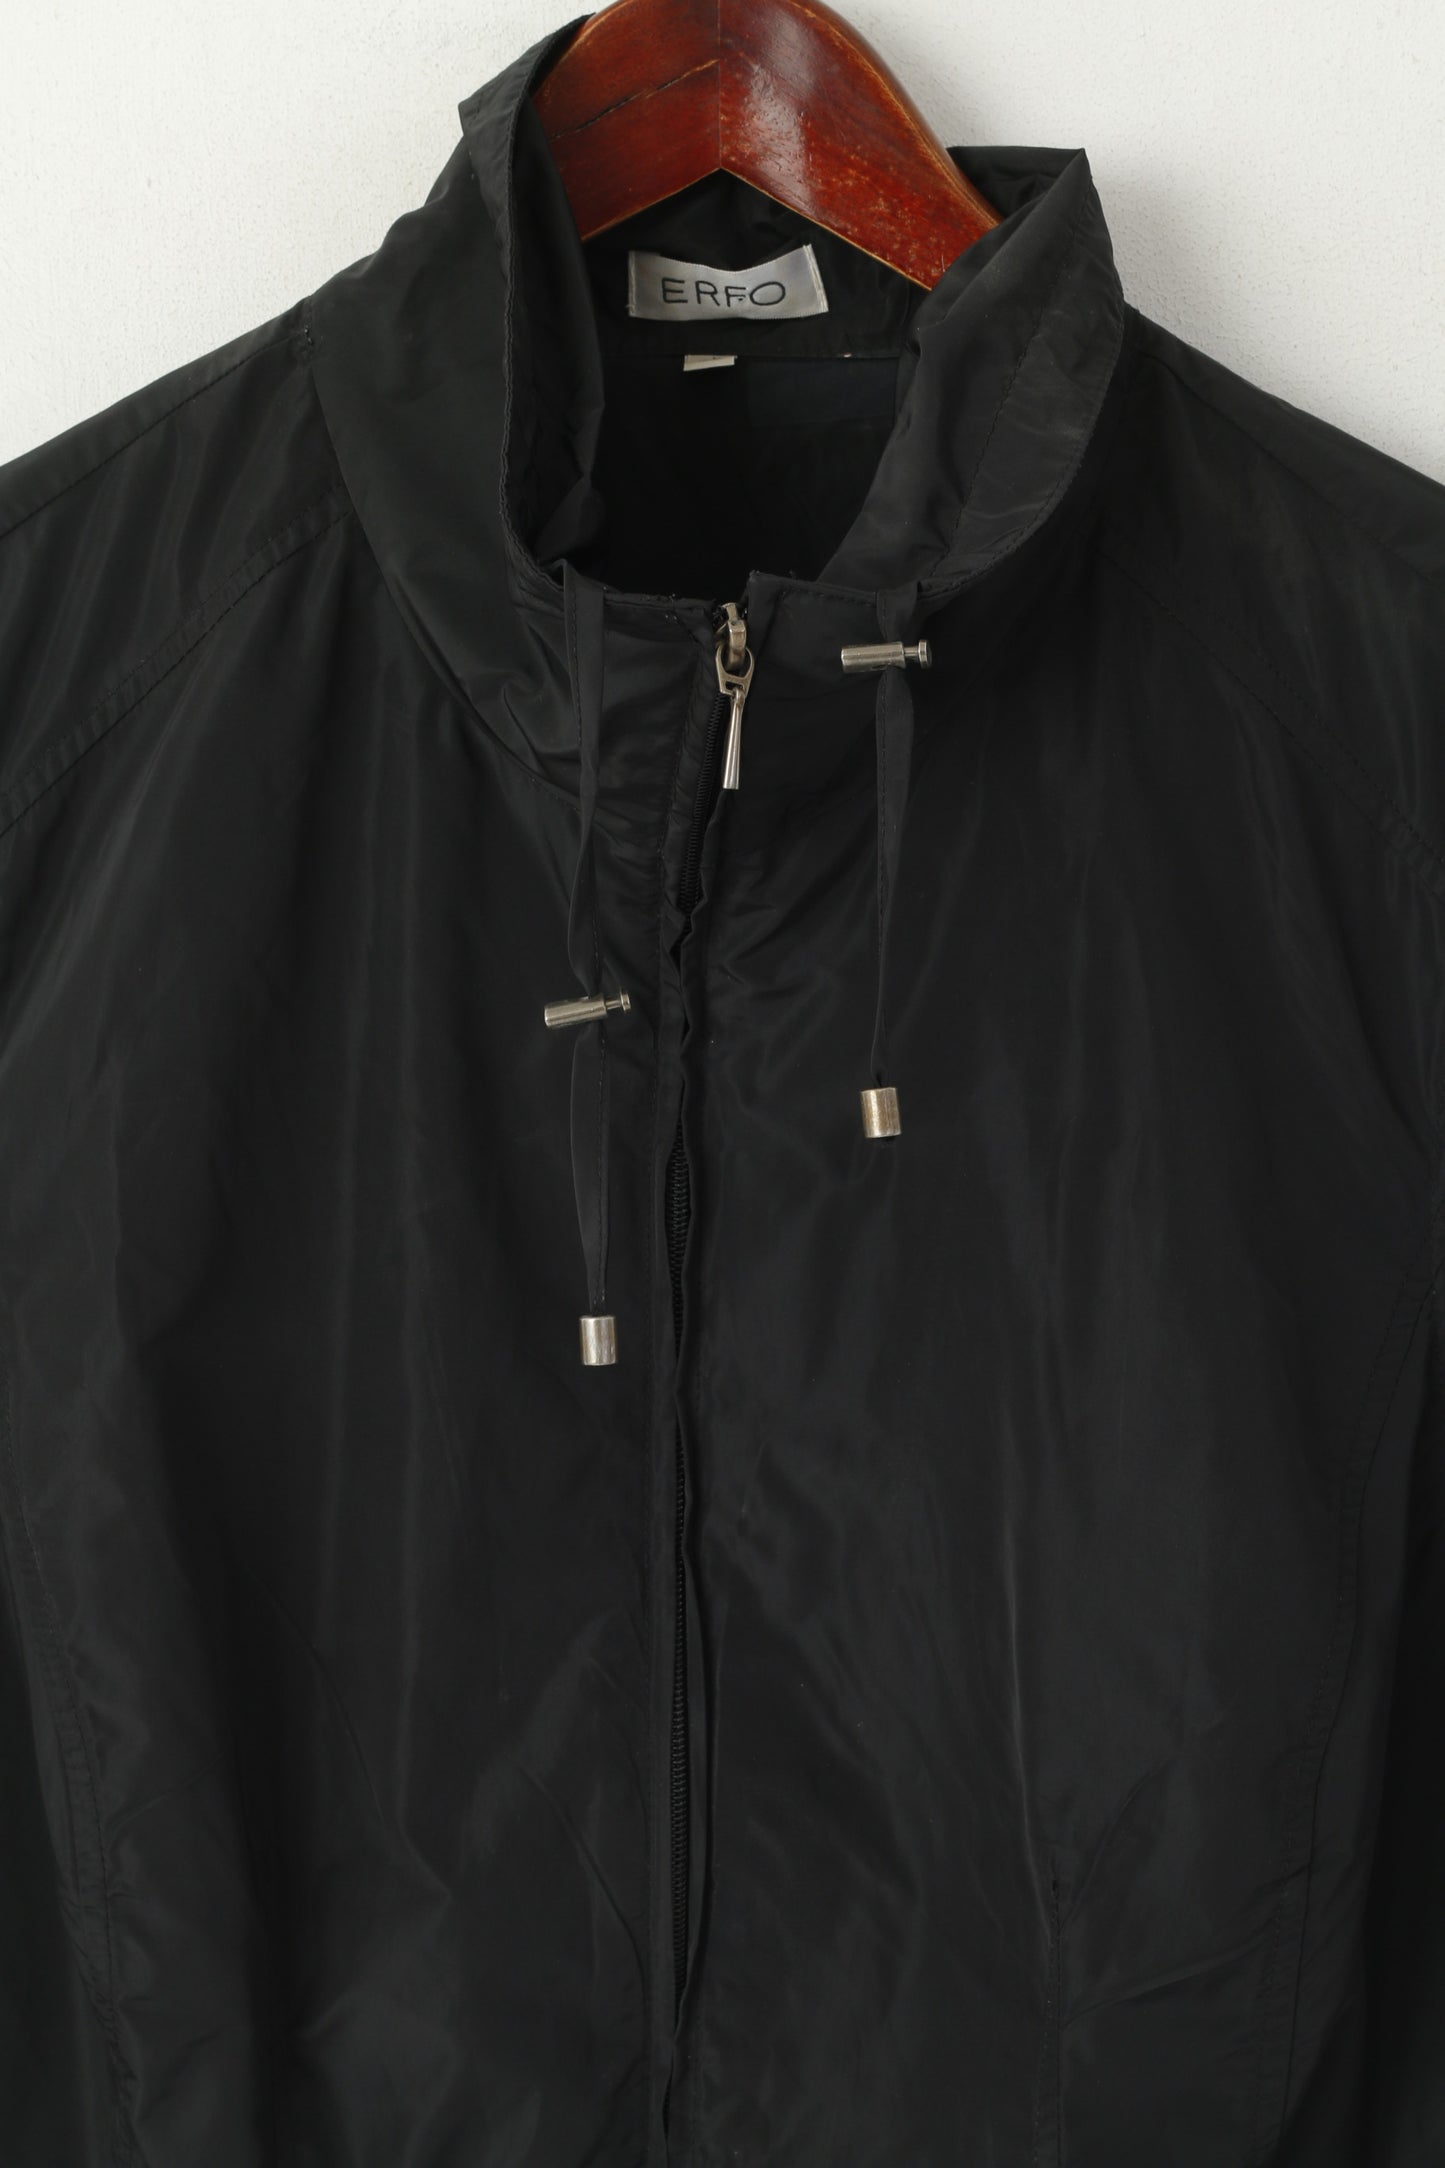 Erfo Women 48 XXL Vest Black Full Zipper Pocket Sleeveless Sportswear Top